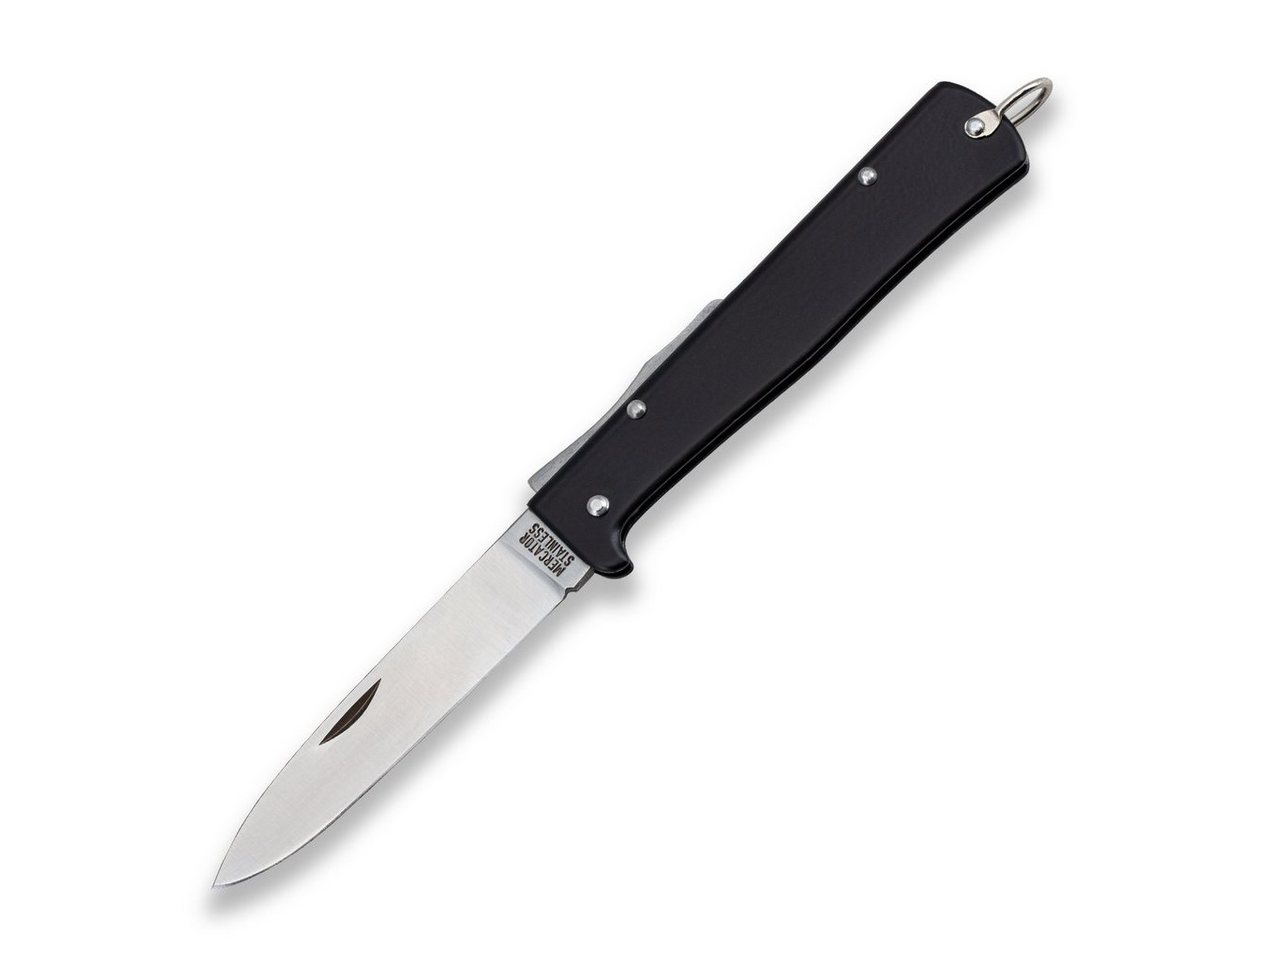 Otter Messer Taschenmesser Mercator-Messer groß schwarz Stahlgriff Backlock, Klinge rostfrei von Otter Messer